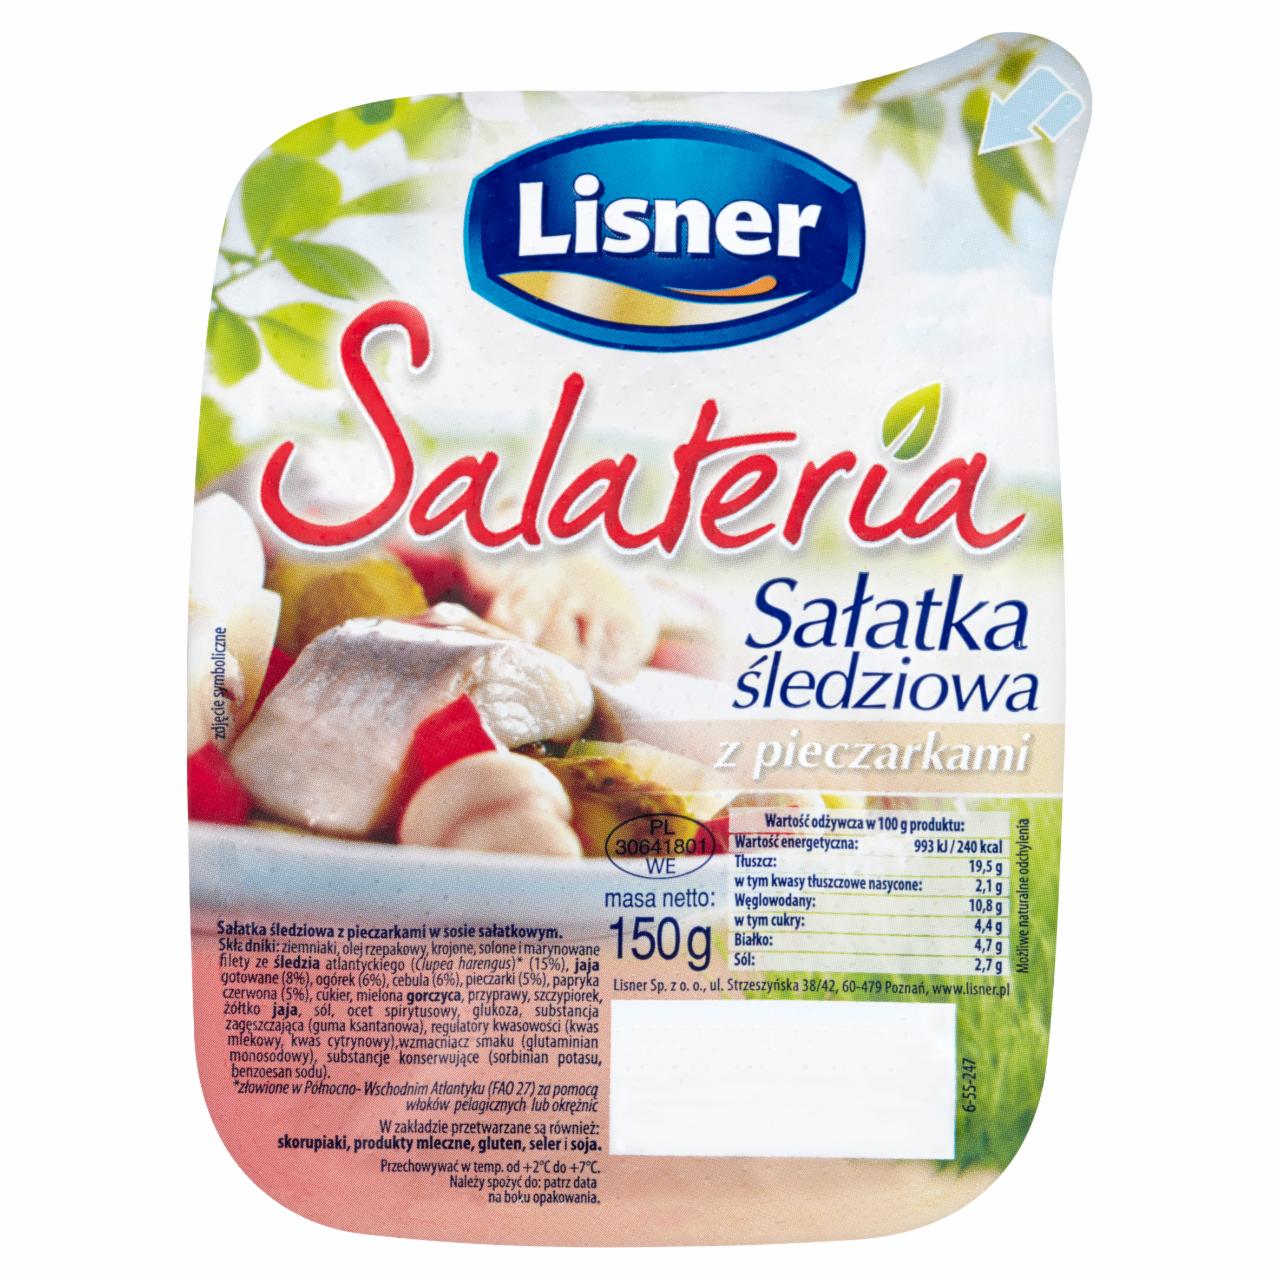 Zdjęcia - Lisner Salateria Sałatka śledziowa z pieczarkami 150 g